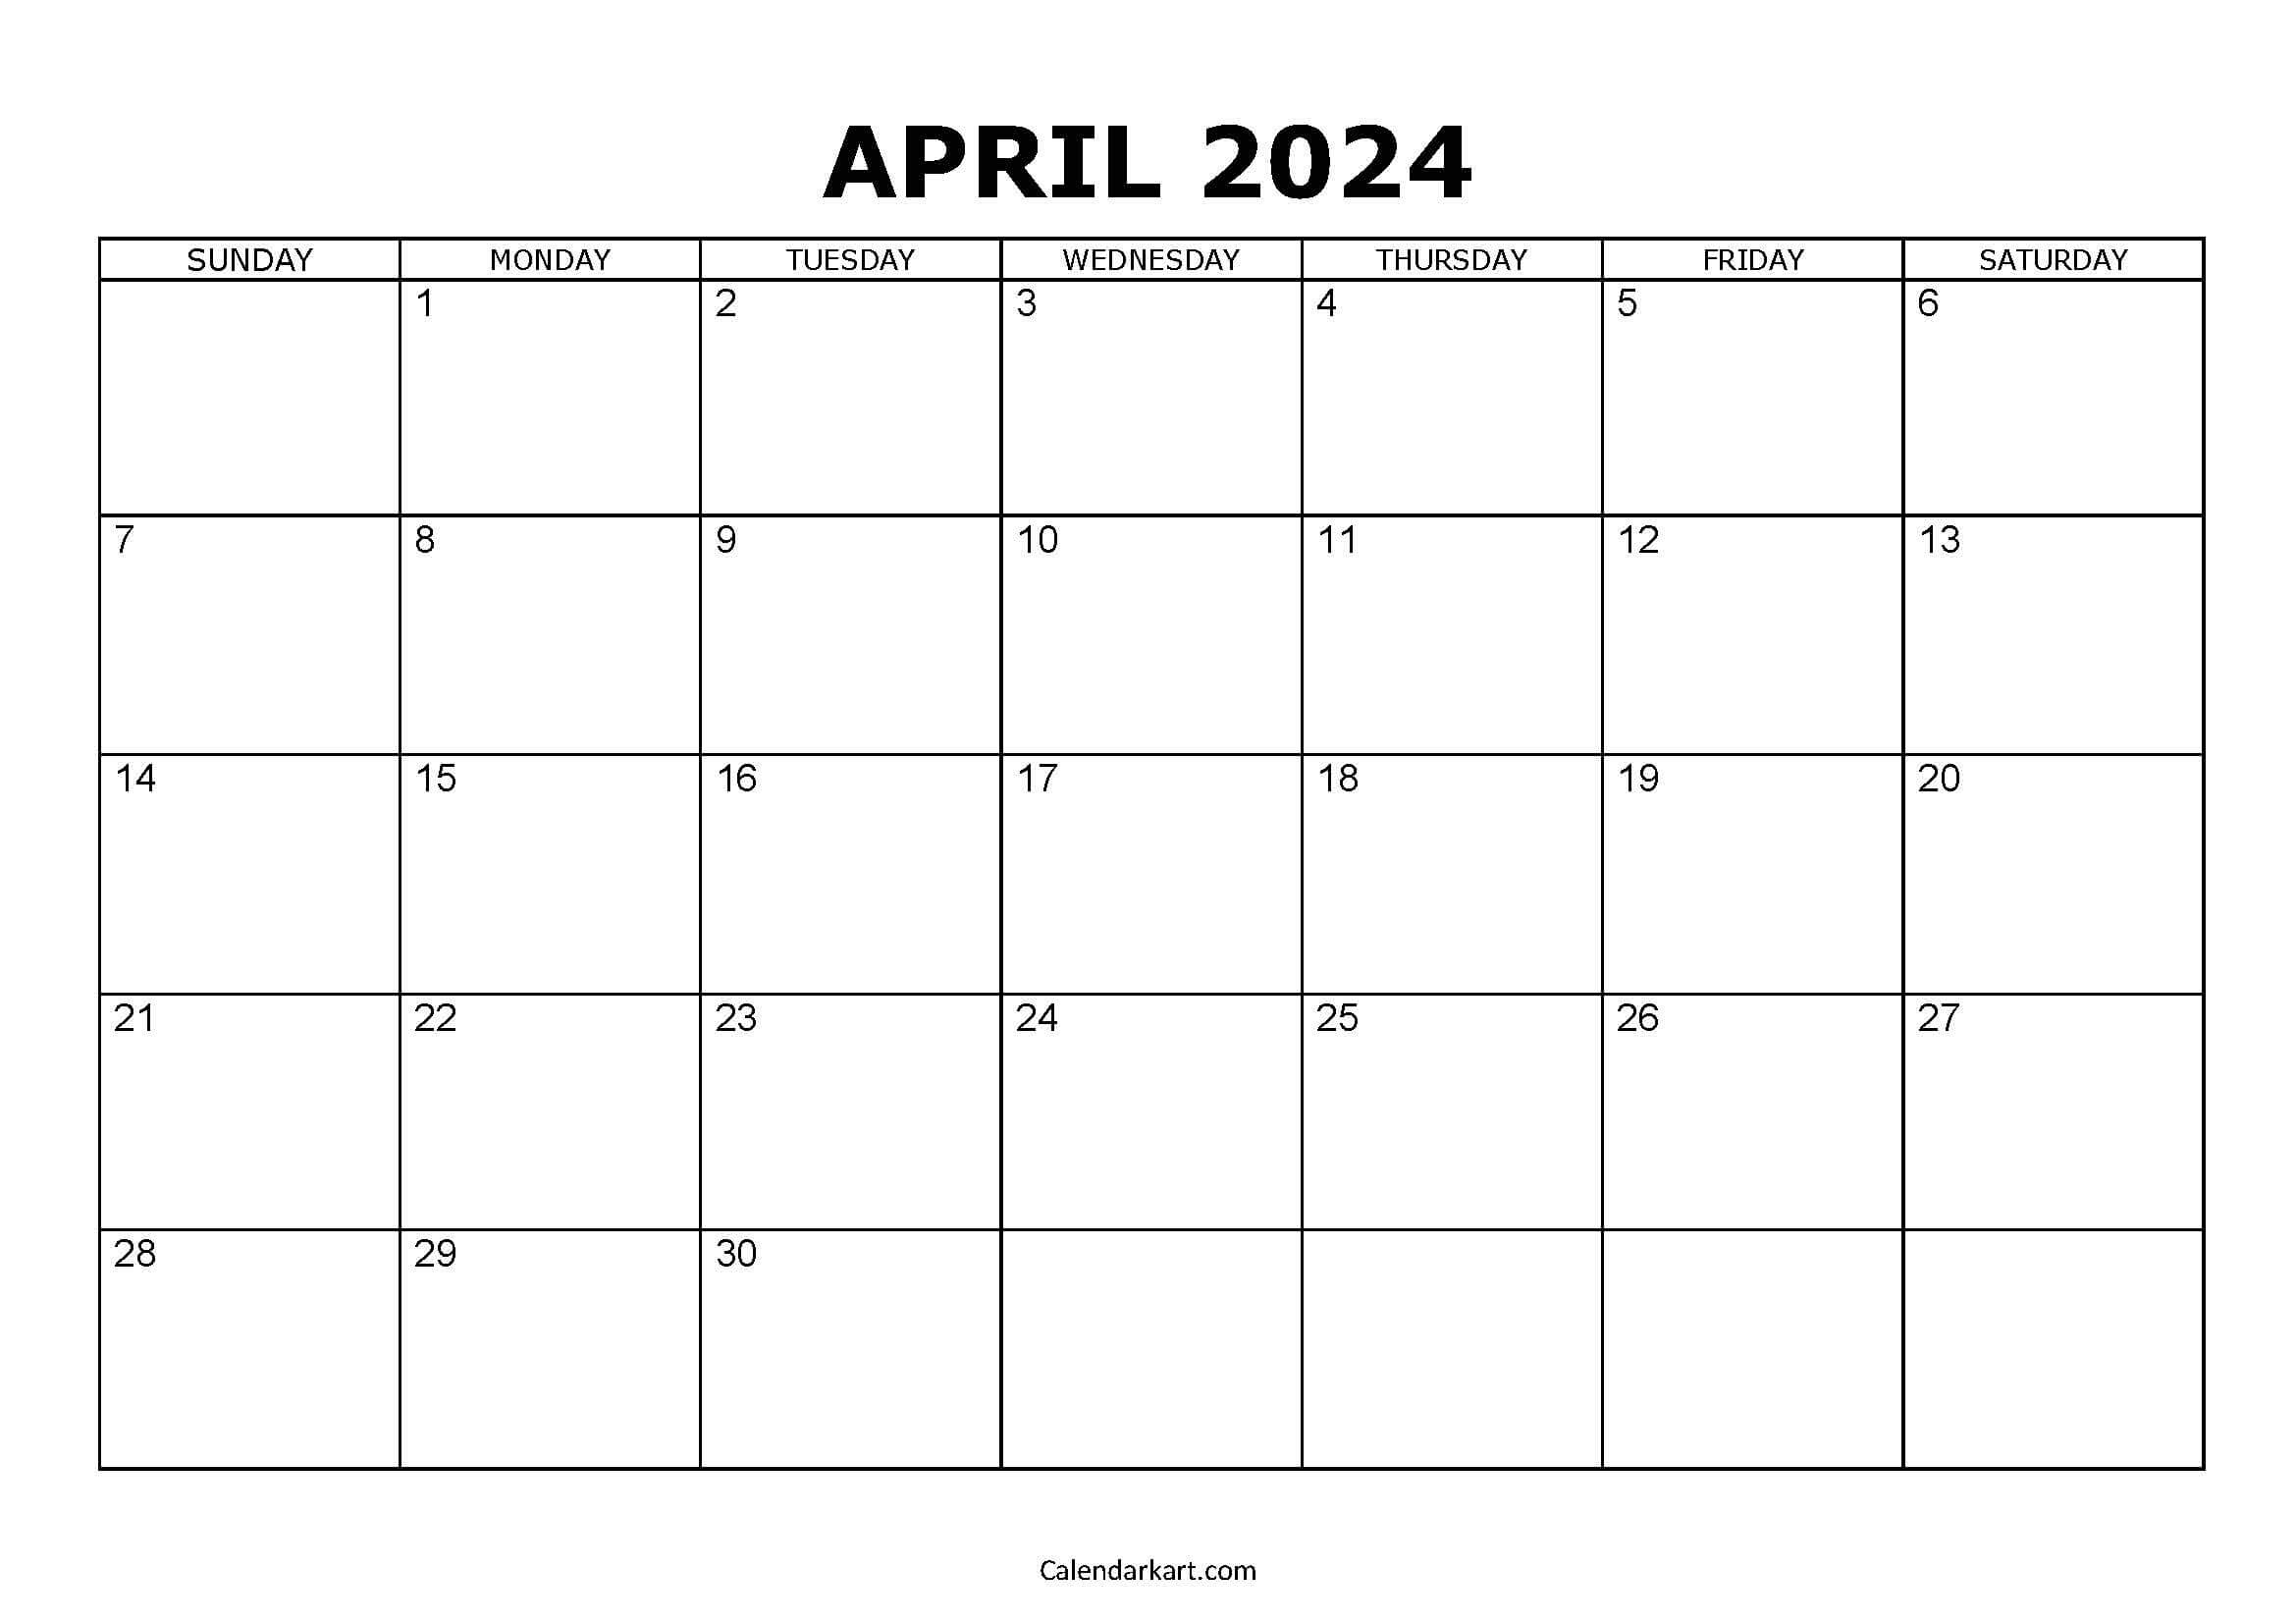 Download Free Printable April 2024 Calendar - Calendarkart regarding Free Printable Calendar April 2024 Landscape